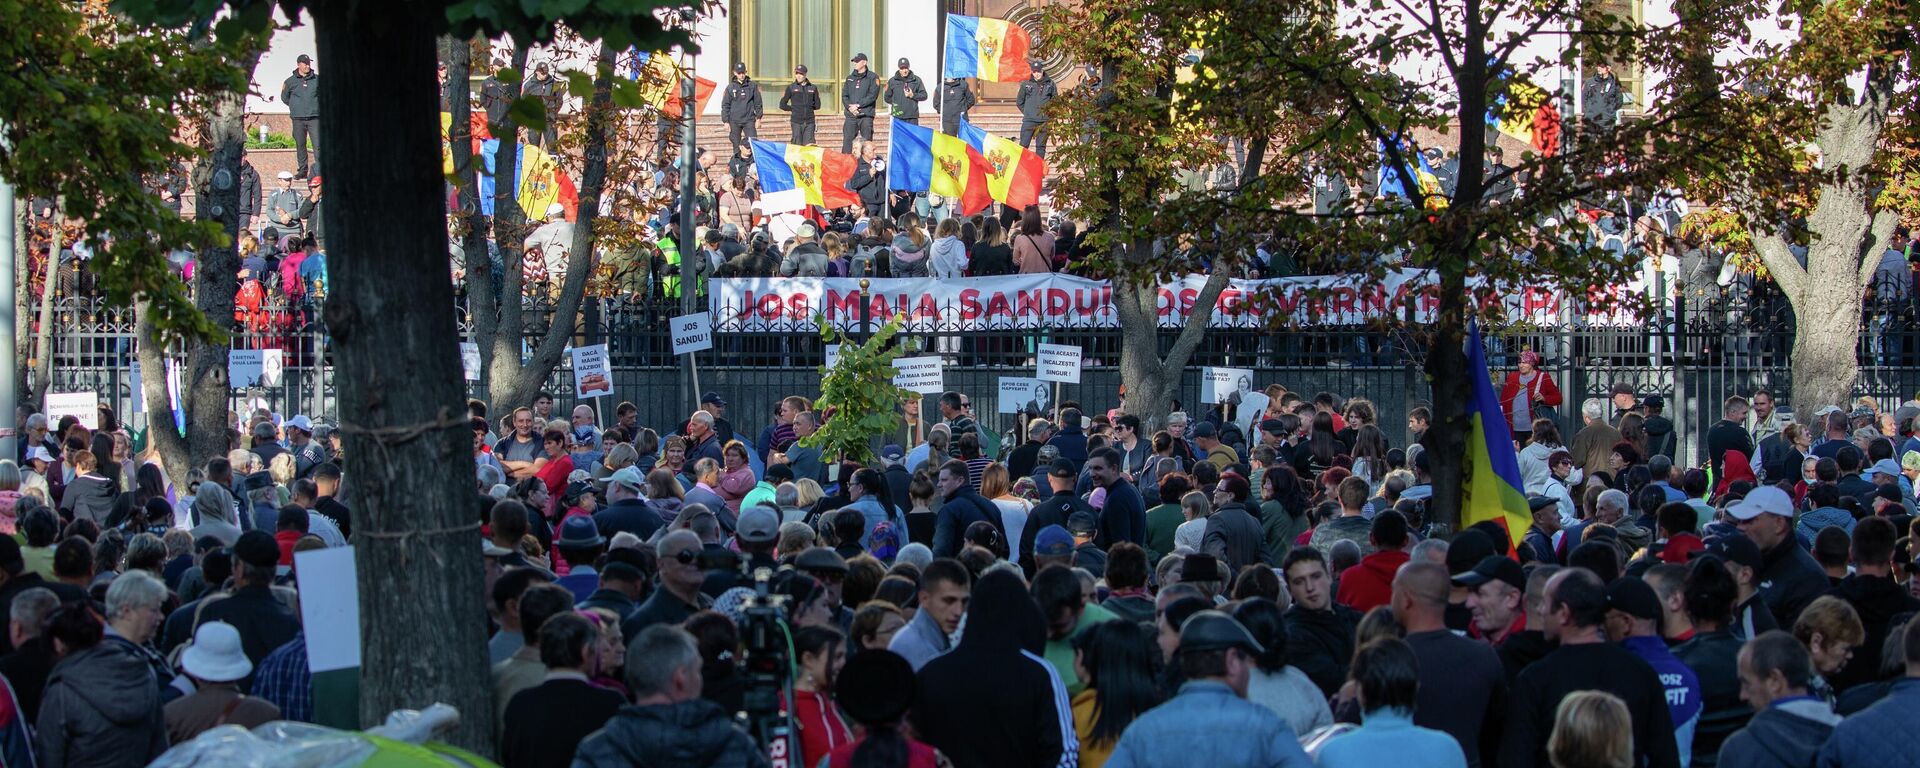 Завершился 8 день бессрочного протеста в Кишиневе - Sputnik Молдова, 1920, 25.09.2022